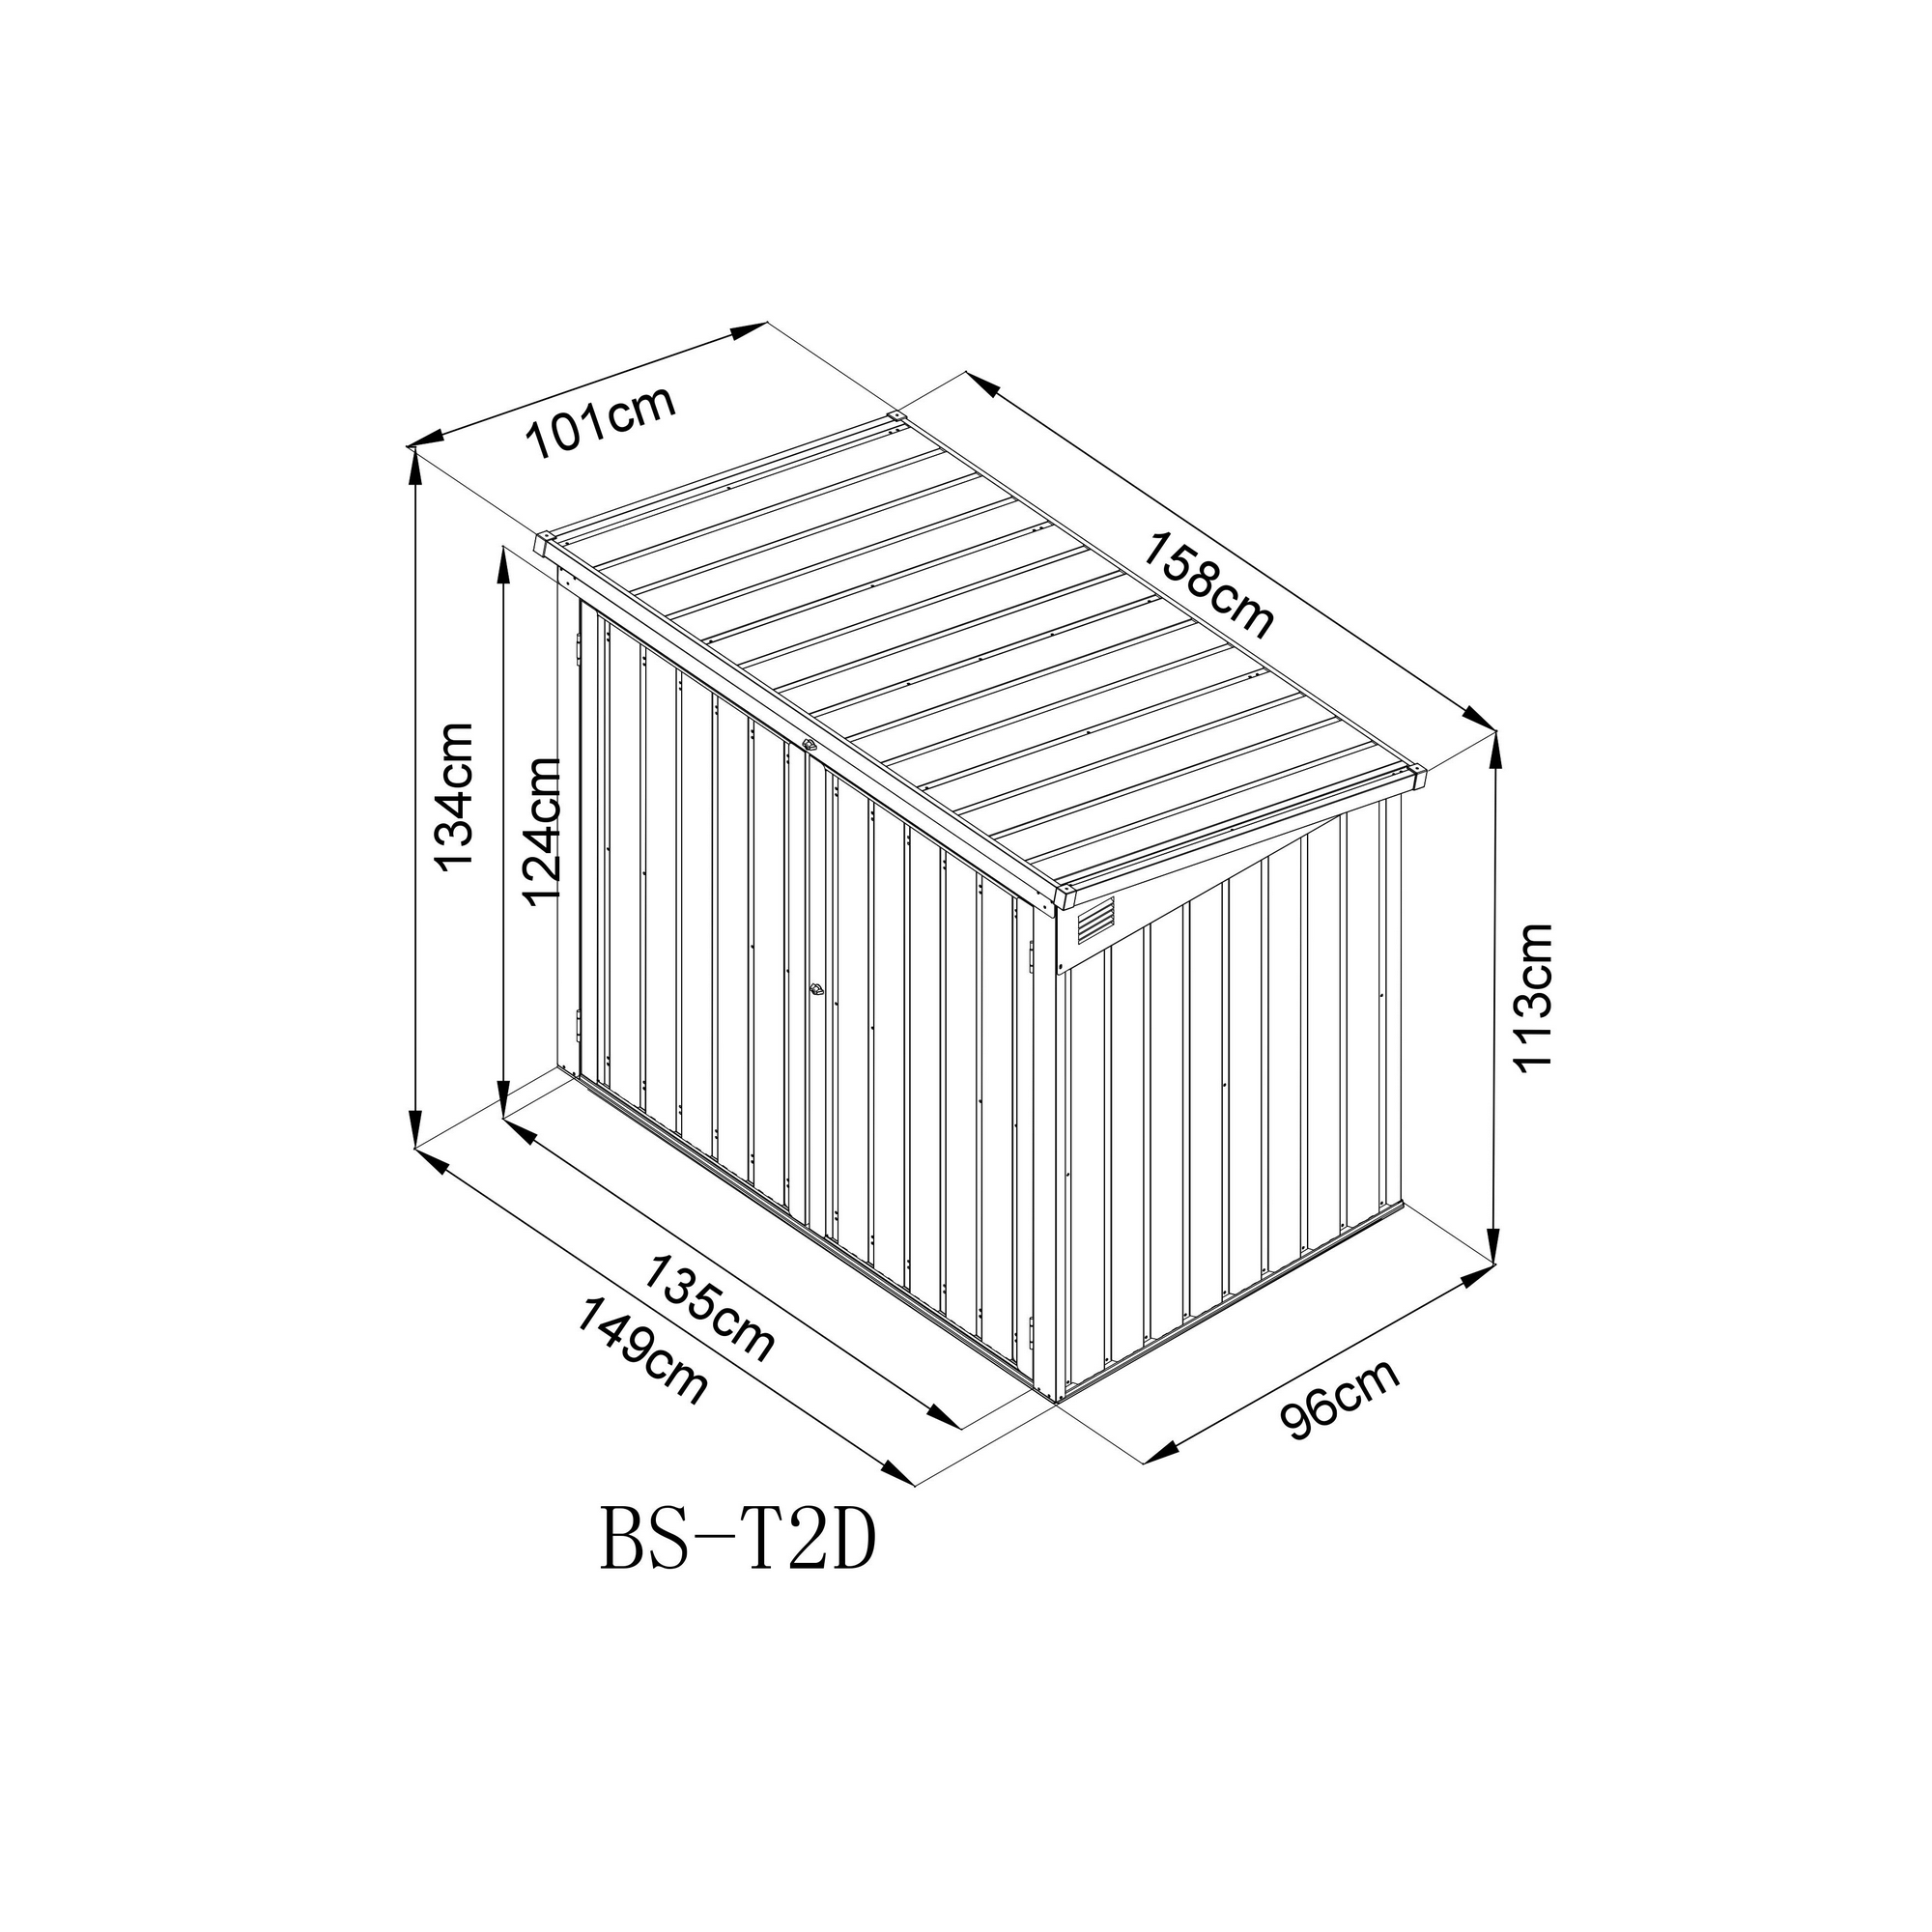 Mülltonnen- und Gerätebox anthrazit Stahl 101 x 158 x 134 cm + product picture